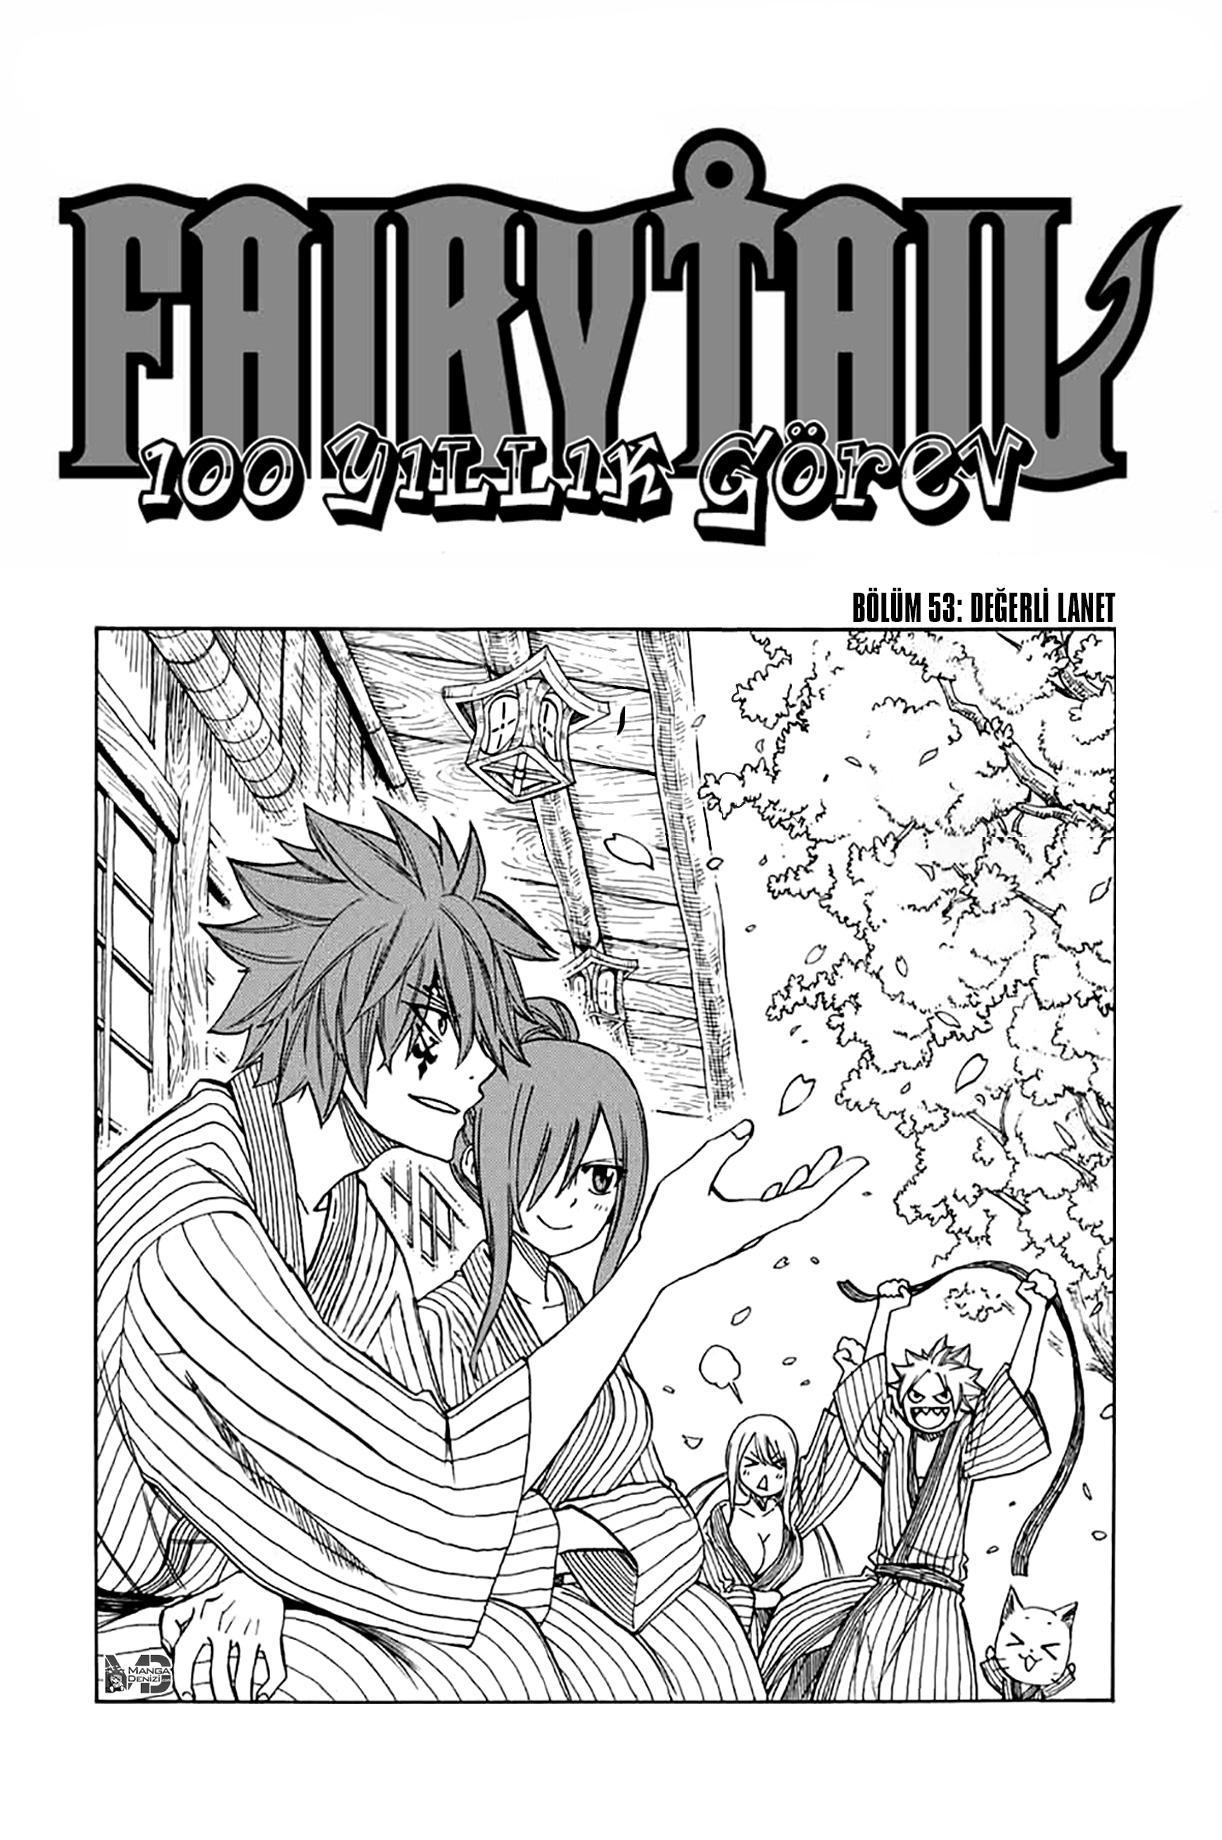 Fairy Tail: 100 Years Quest mangasının 053 bölümünün 2. sayfasını okuyorsunuz.